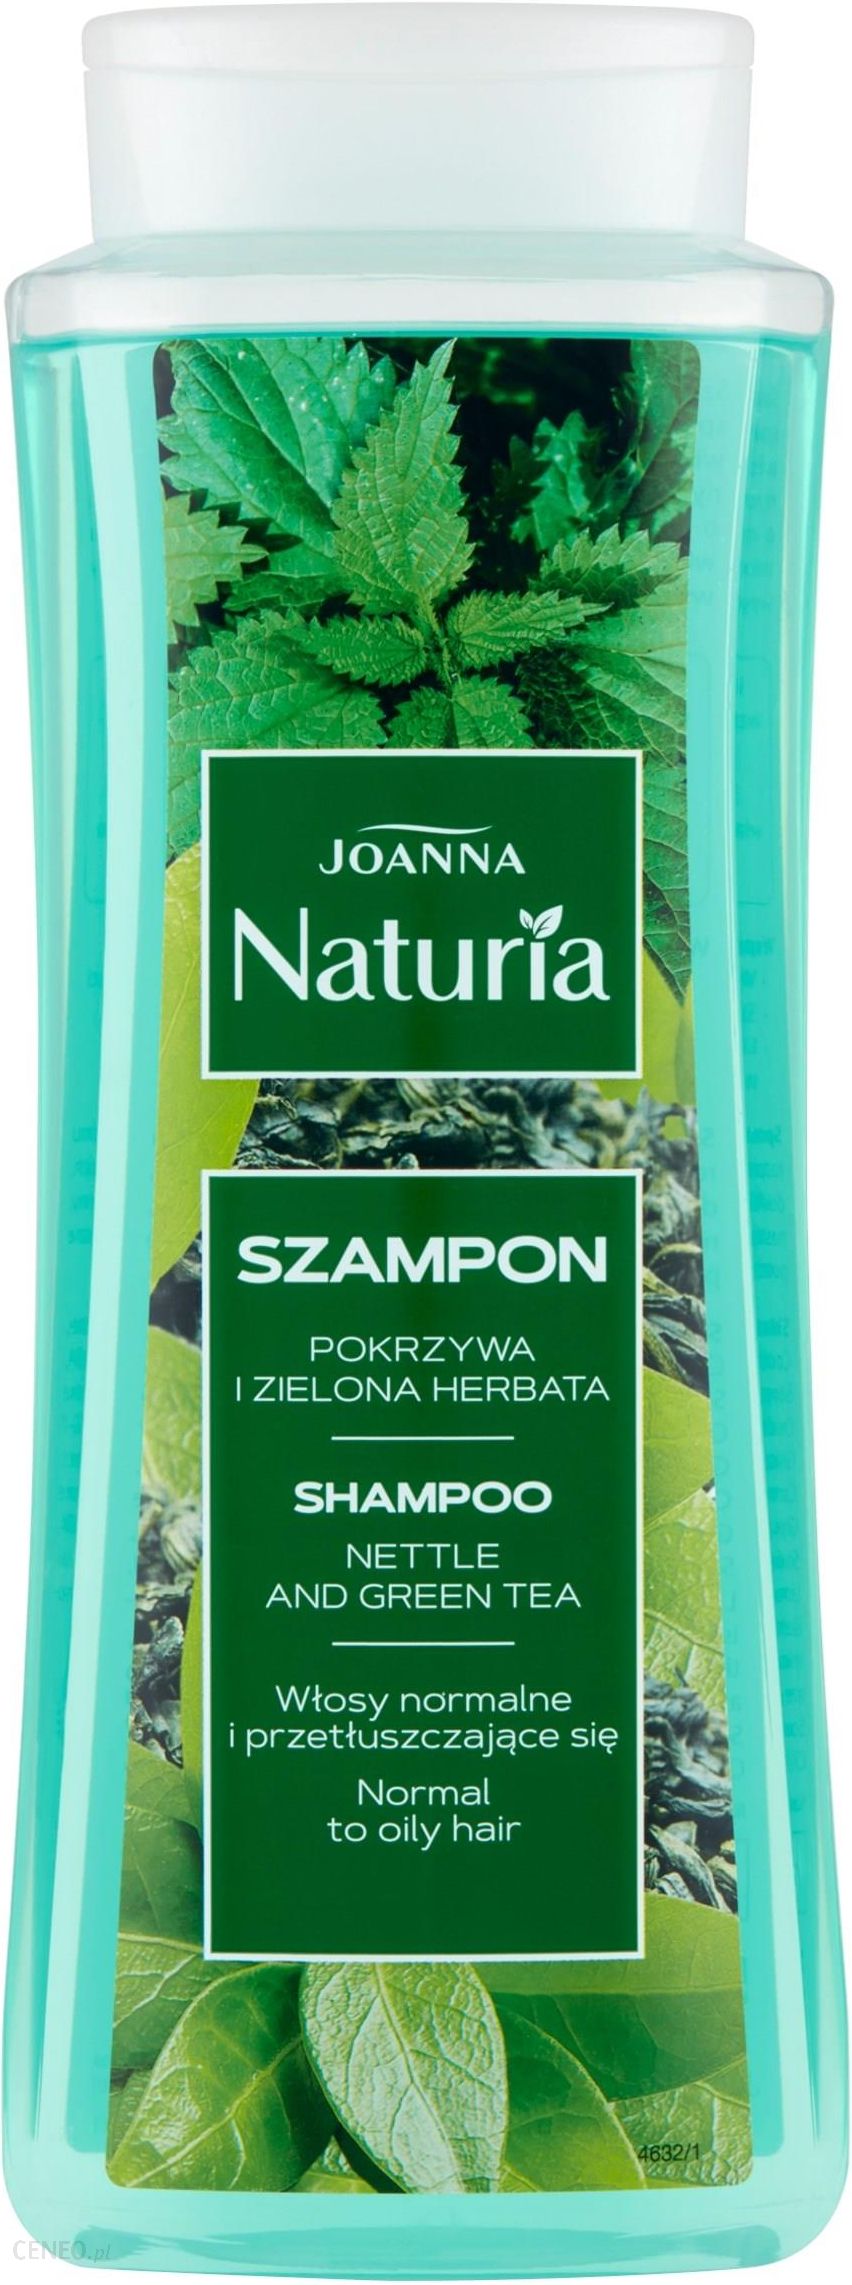 joanna szampon pokrzywa